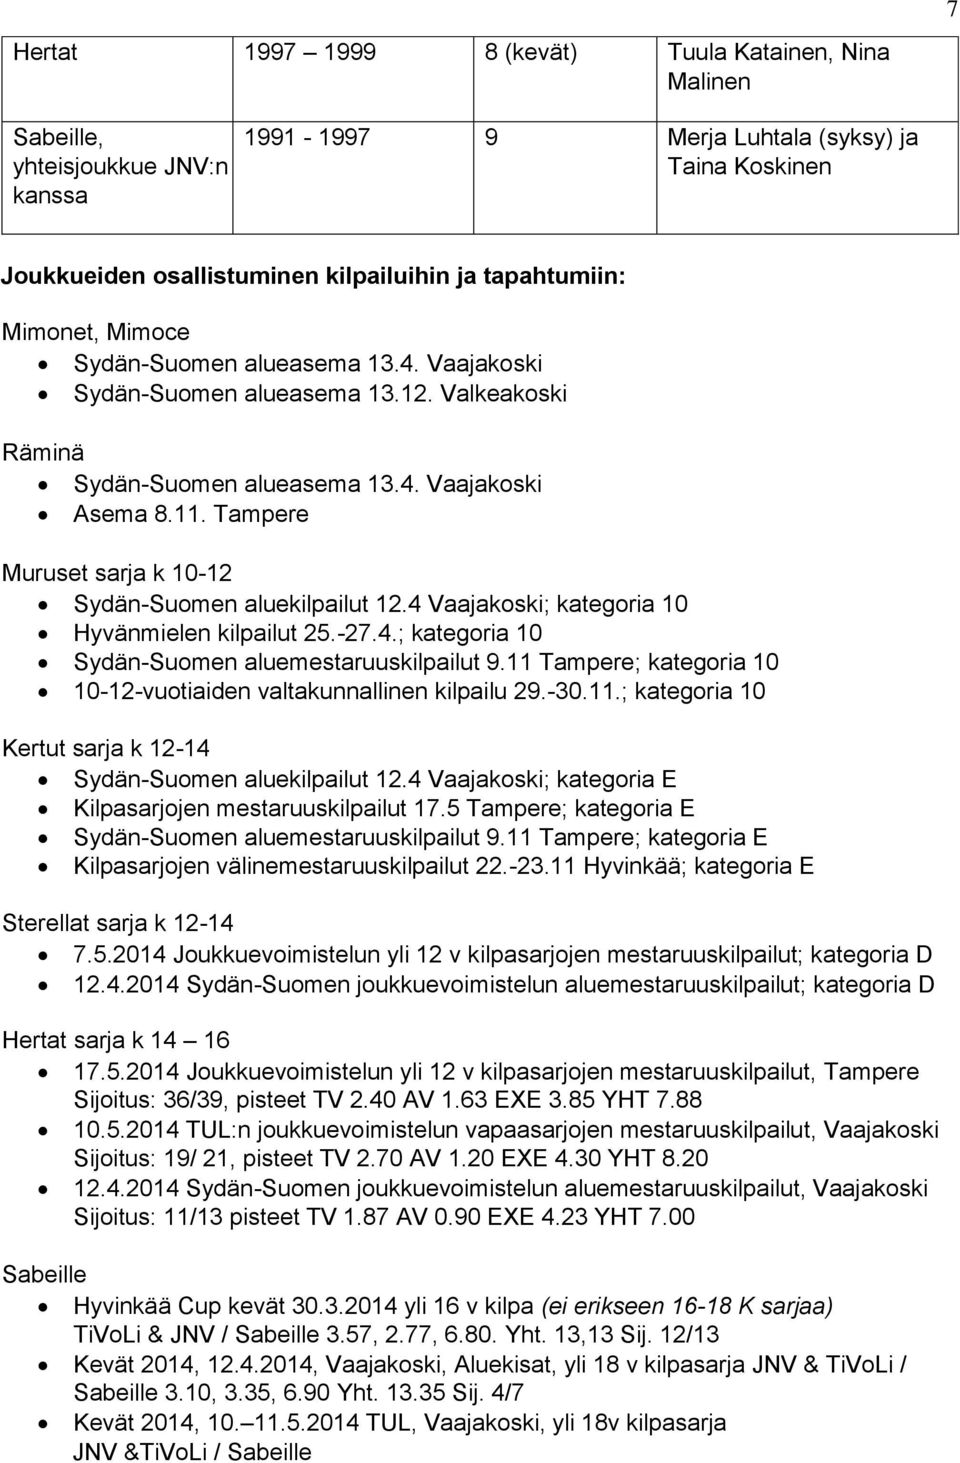 Tampere Muruset sarja k 10-12 Sydän-Suomen aluekilpailut 12.4 Vaajakoski; kategoria 10 Hyvänmielen kilpailut 25.-27.4.; kategoria 10 Sydän-Suomen aluemestaruuskilpailut 9.